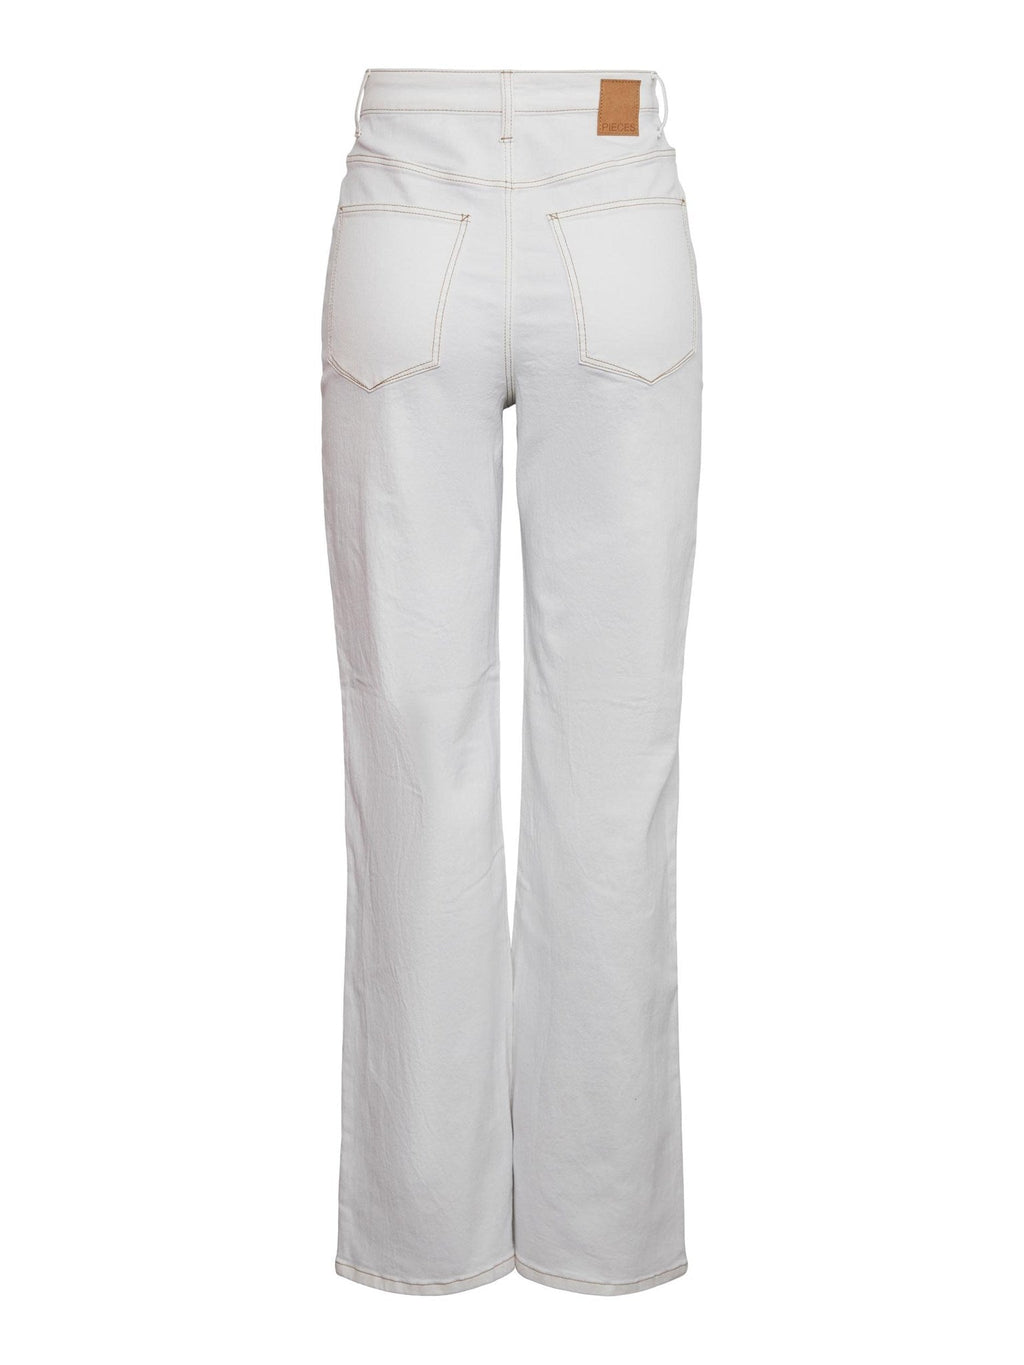 Noah Ultra Wauist Jeans - Biele